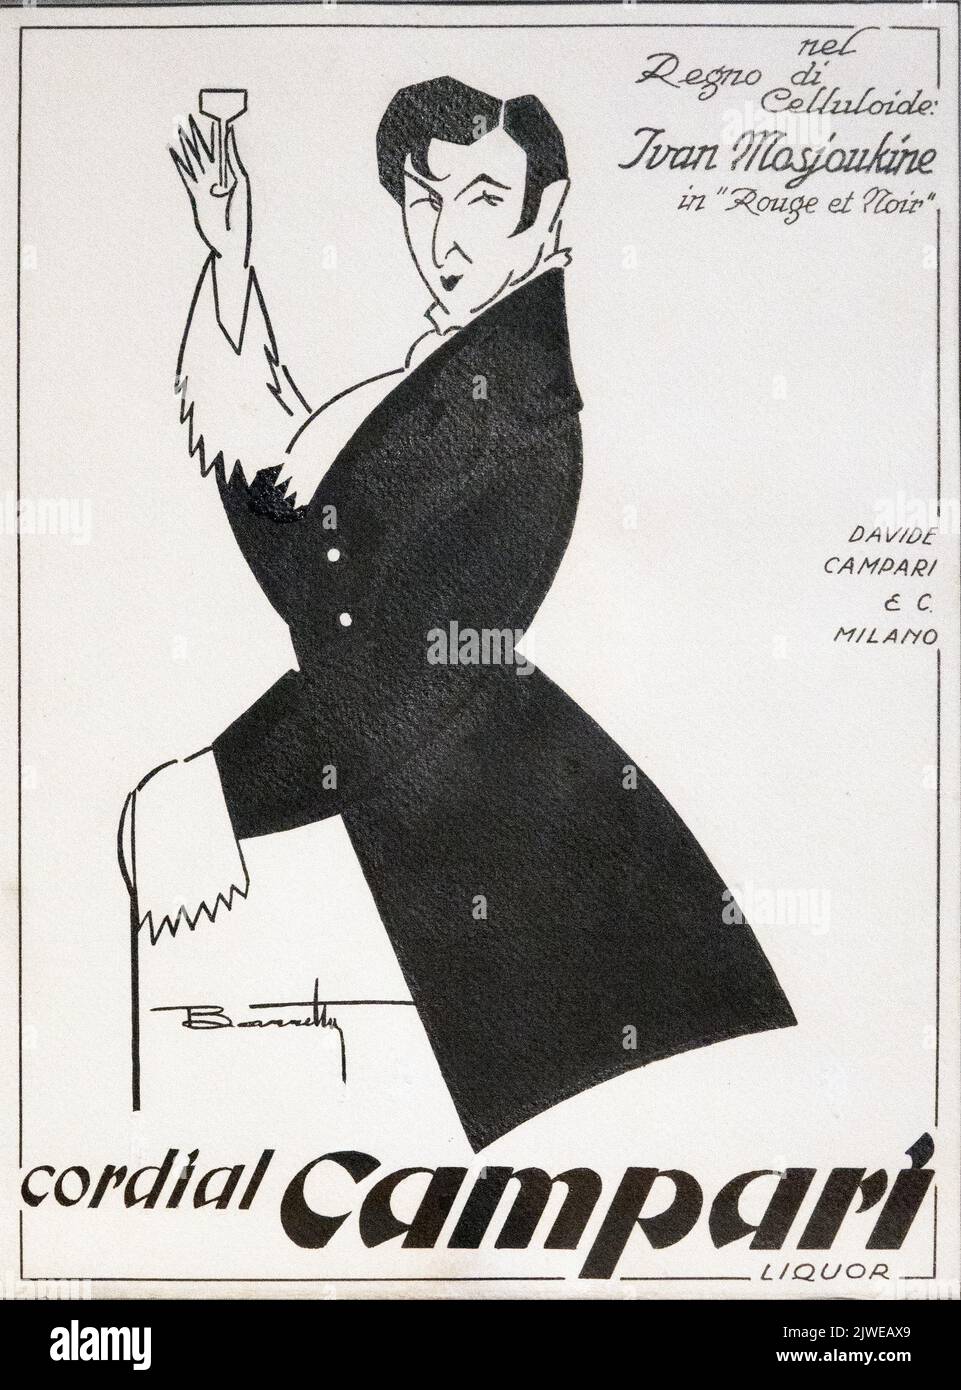 Poster pubblicitario vintage di Cordial Campari in bianco e nero. Immagine scattata alla Galleria Campari vicino a Milano. Foto Stock